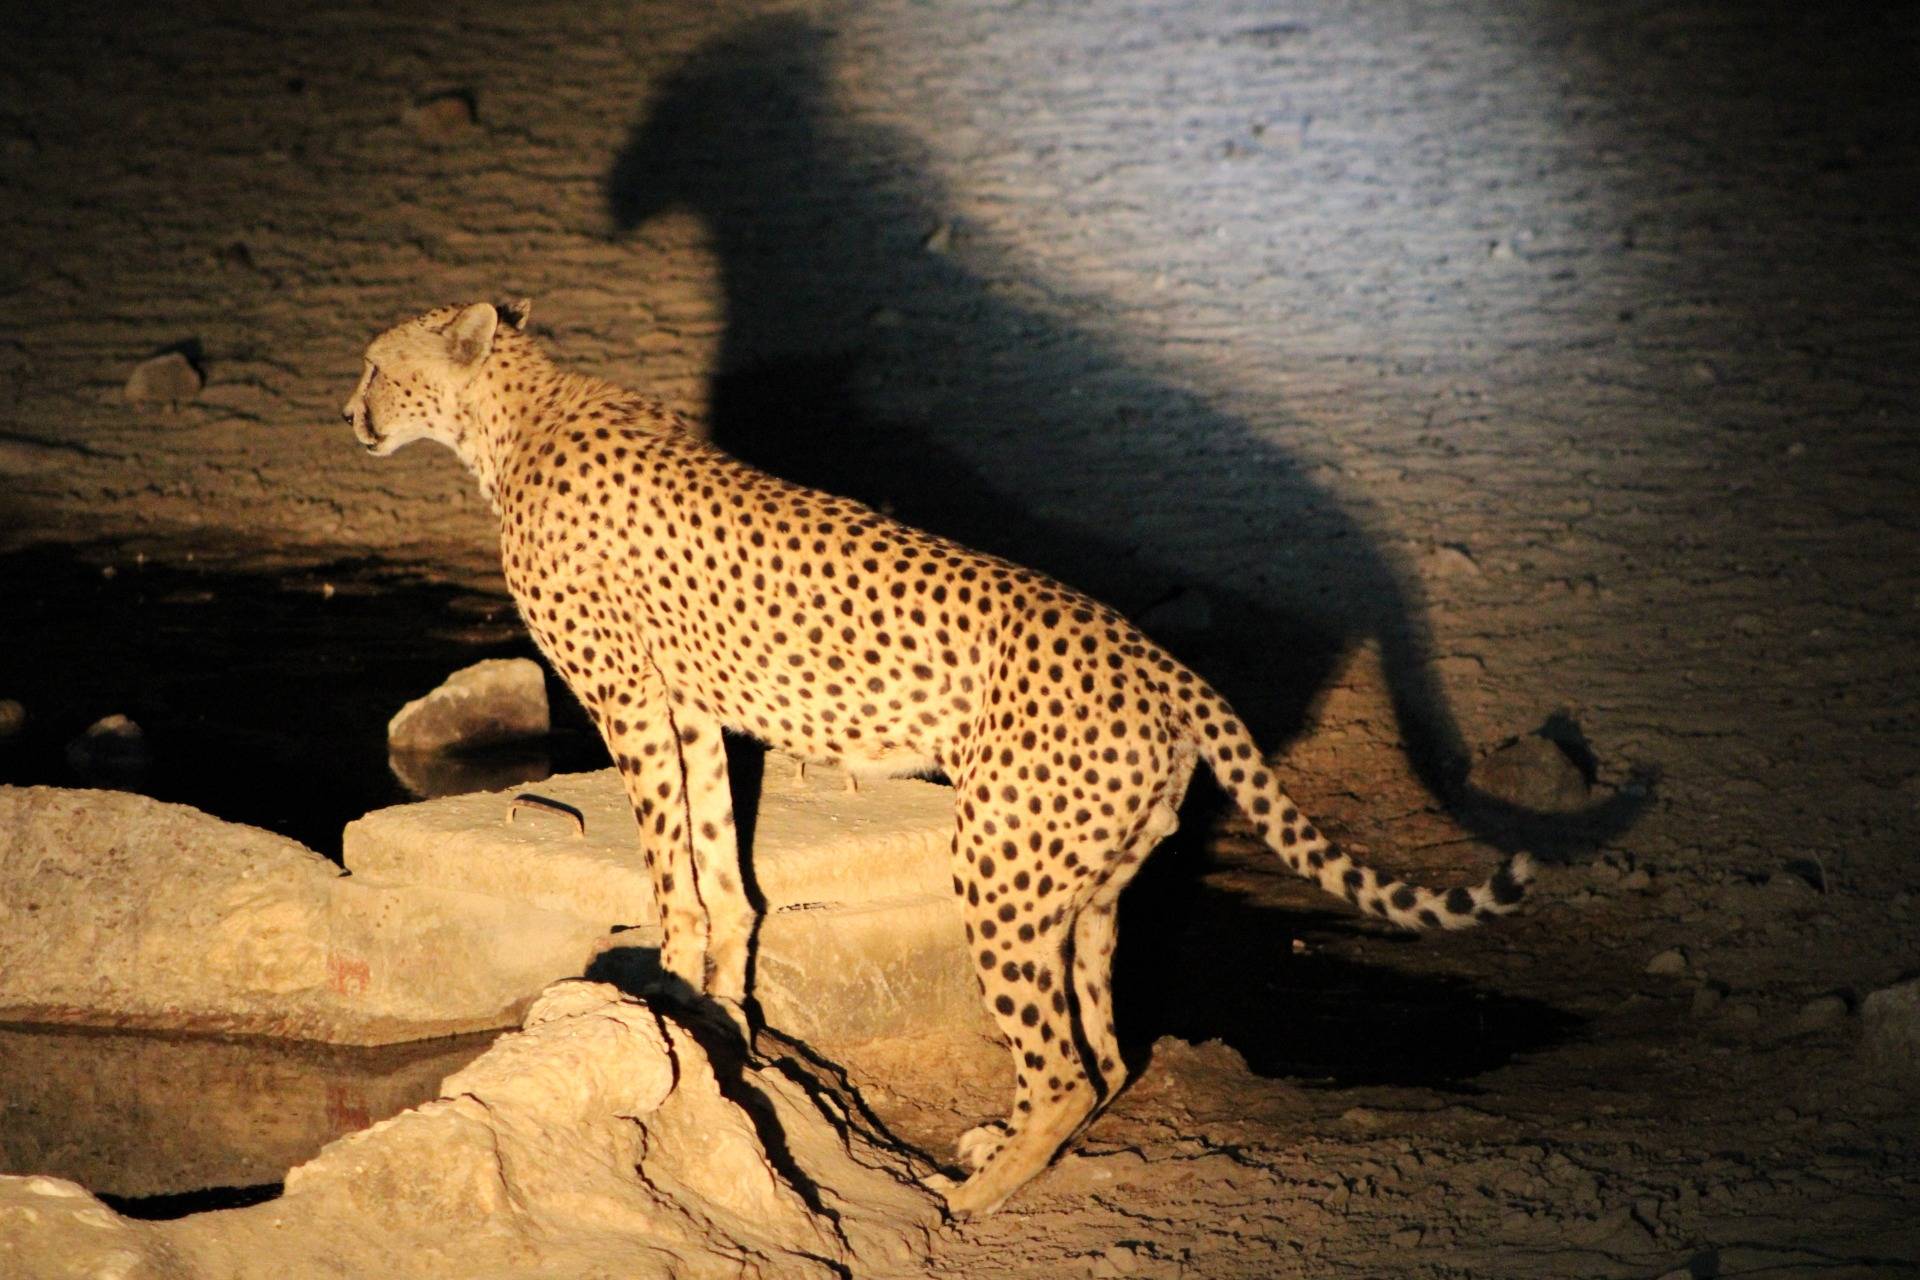 Cheetah at a waterhole.